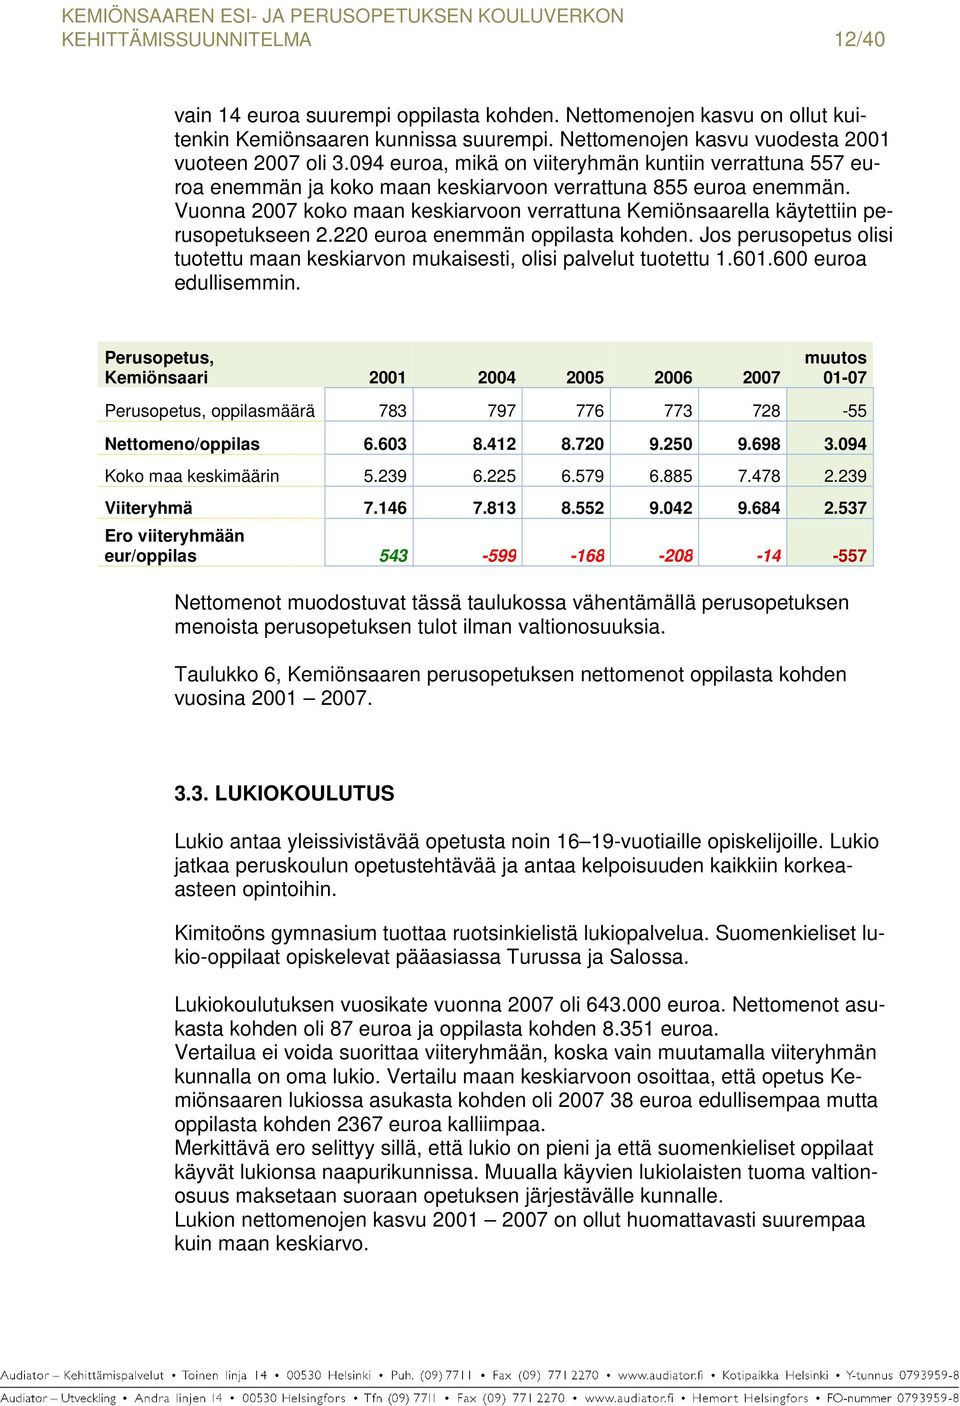 Vuonna 2007 koko maan keskiarvoon verrattuna Kemiönsaarella käytettiin perusopetukseen 2.220 euroa enemmän oppilasta kohden.